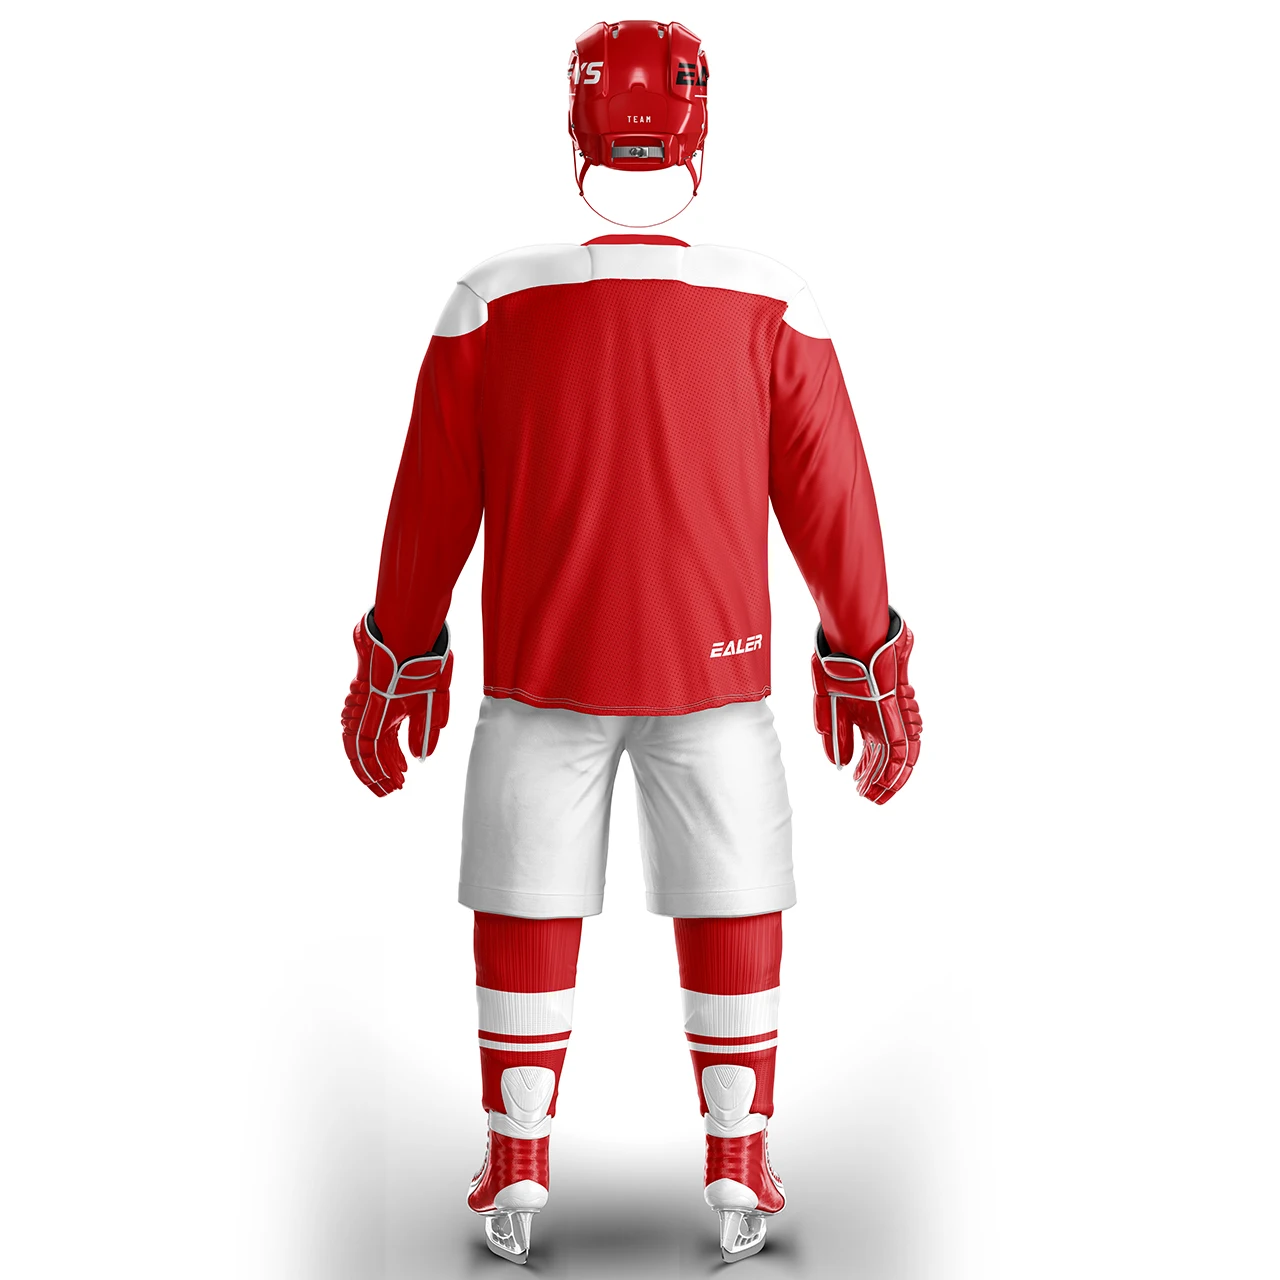 EALER набор костюм дешевые высокого качества хоккейные майки для тренировок или игры Спот H6100-22